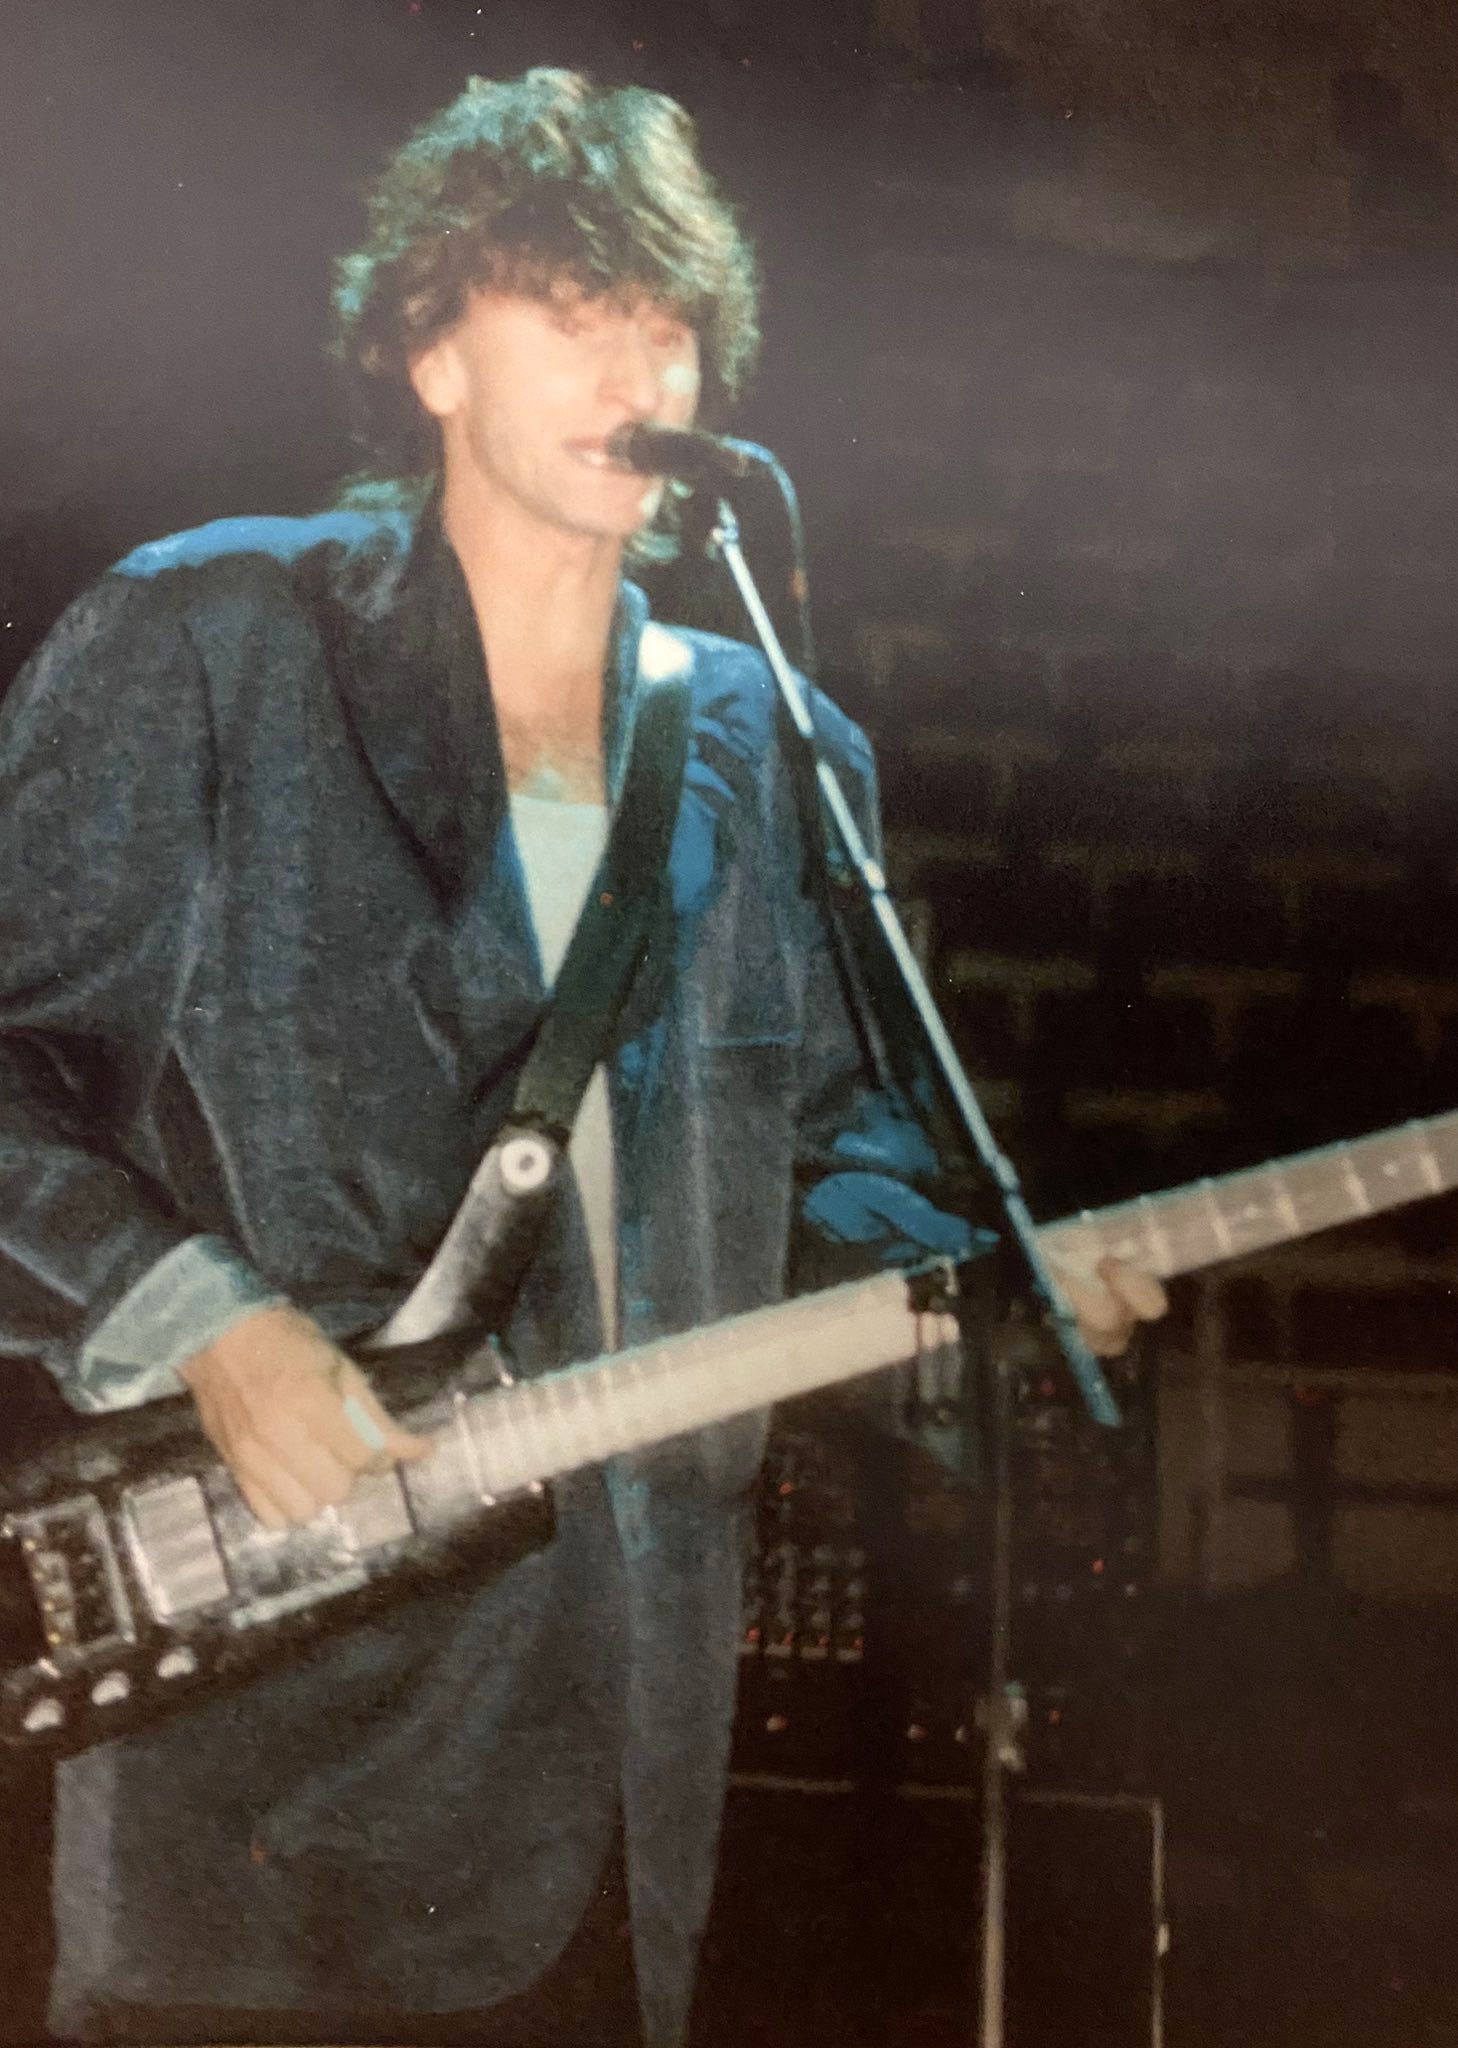 Rush 'Power Windows' Tour Pictures - Joe Louis Arena - Detroit, Michigan - March 28, 1986